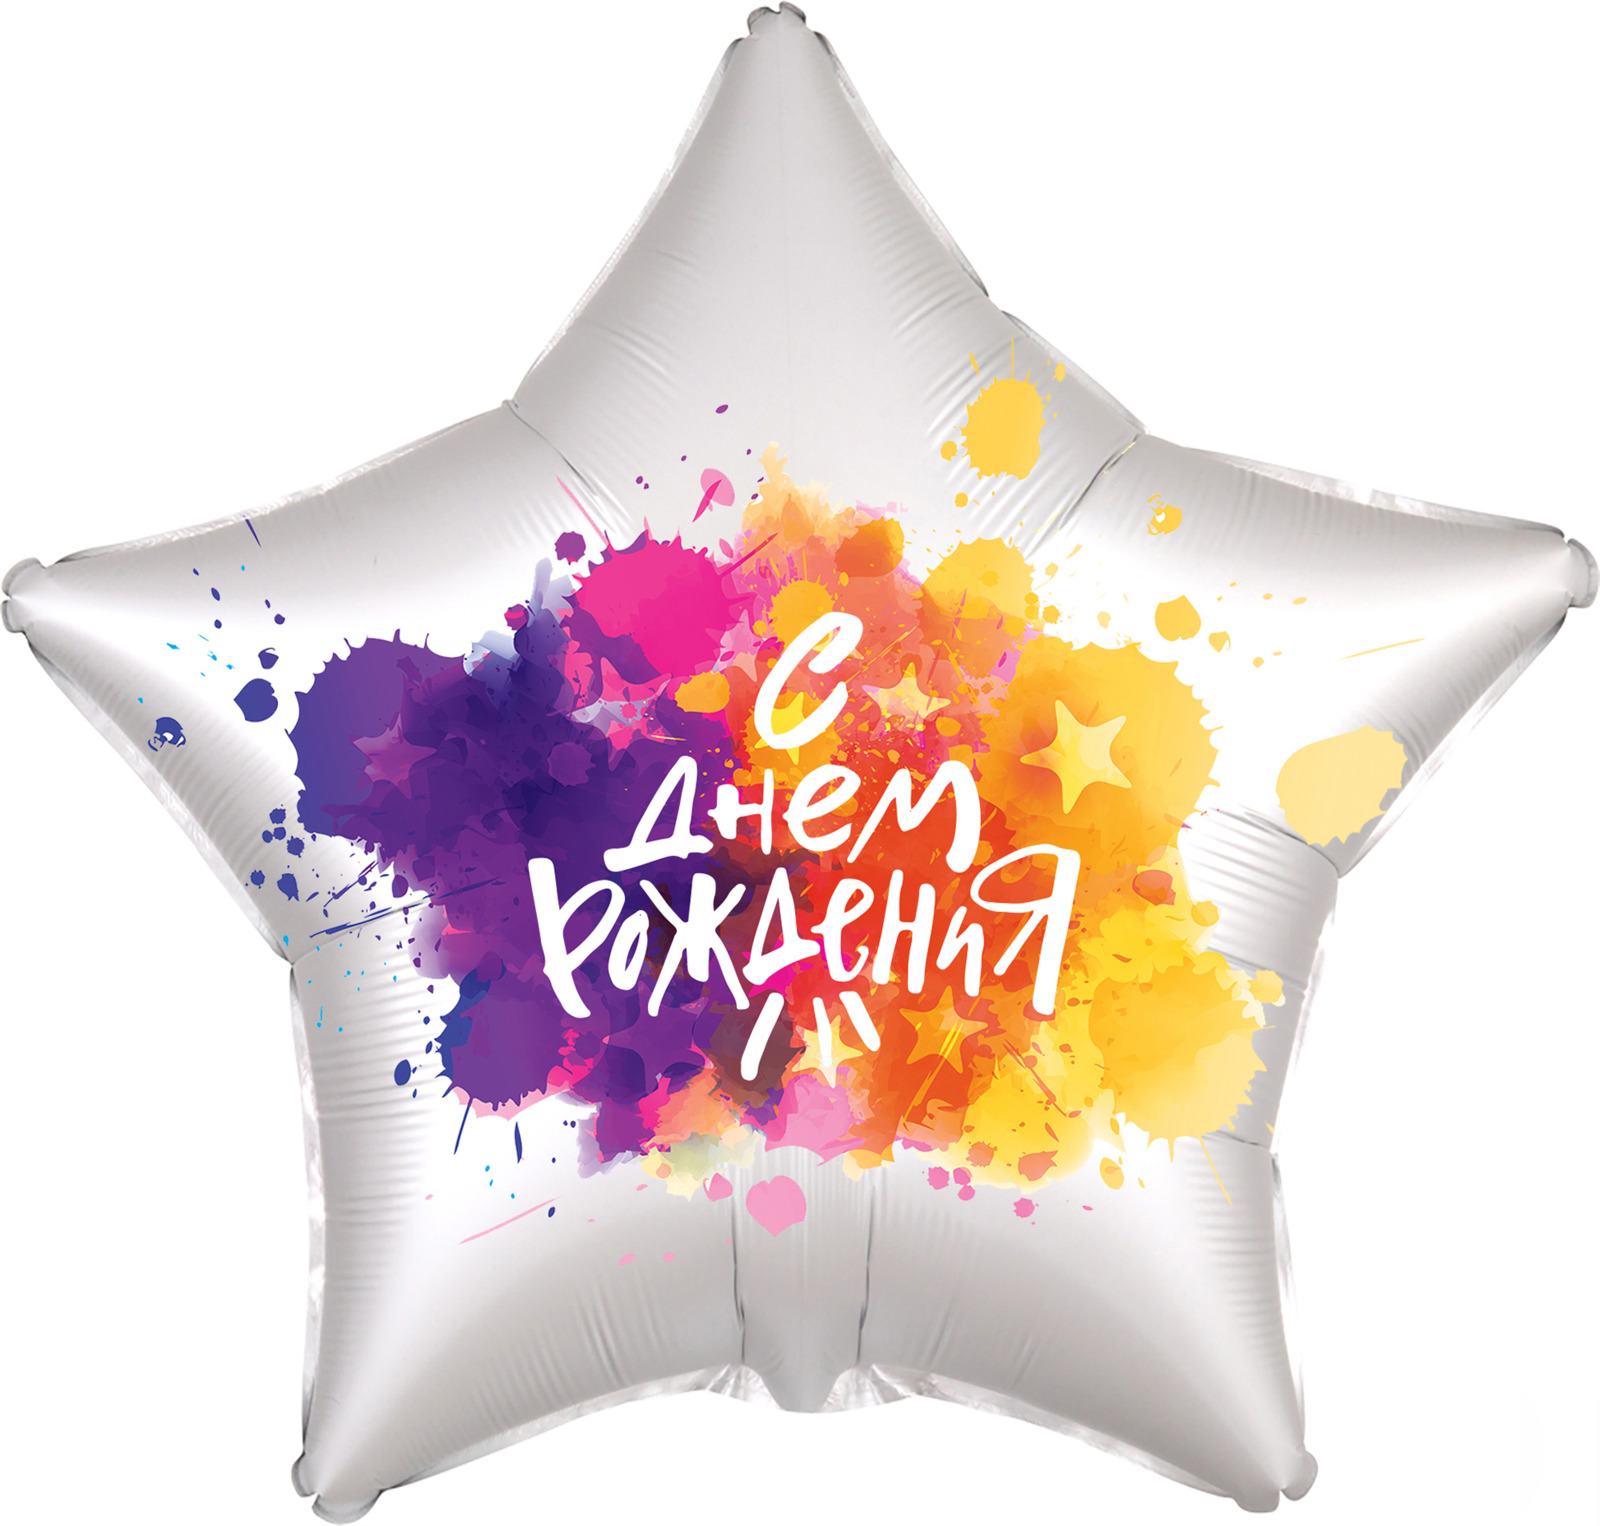 Воздушный шар Miland С днем рождения, краски, 466-5-305-40796-9